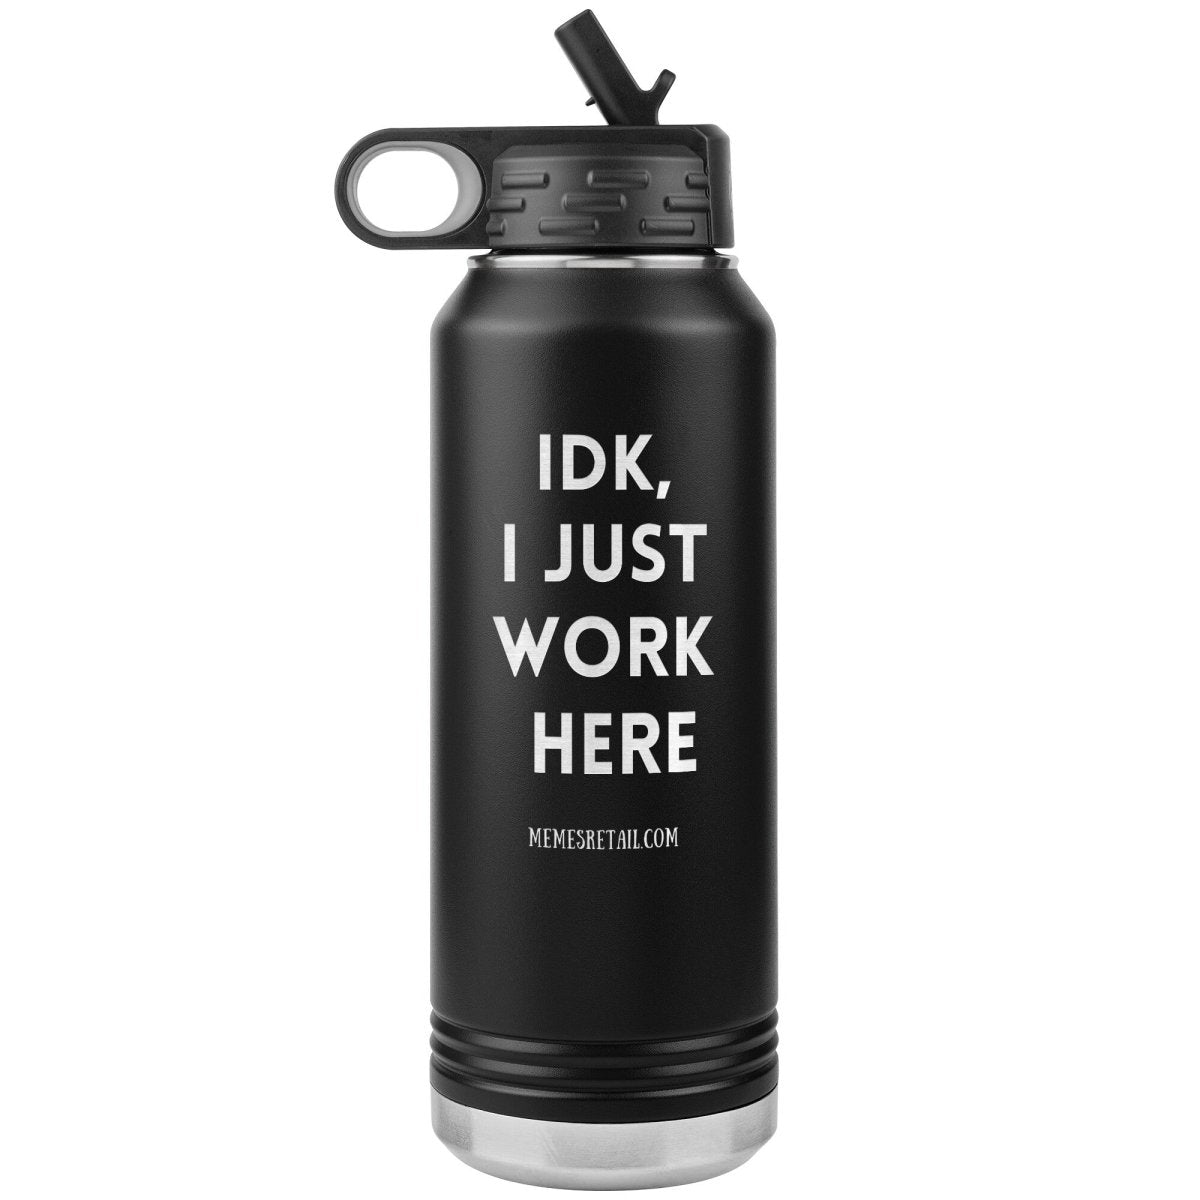 IDK, I Just Work Here 32 oz Stainless Steel Water Bottle Tumbler, Black - MemesRetail.com